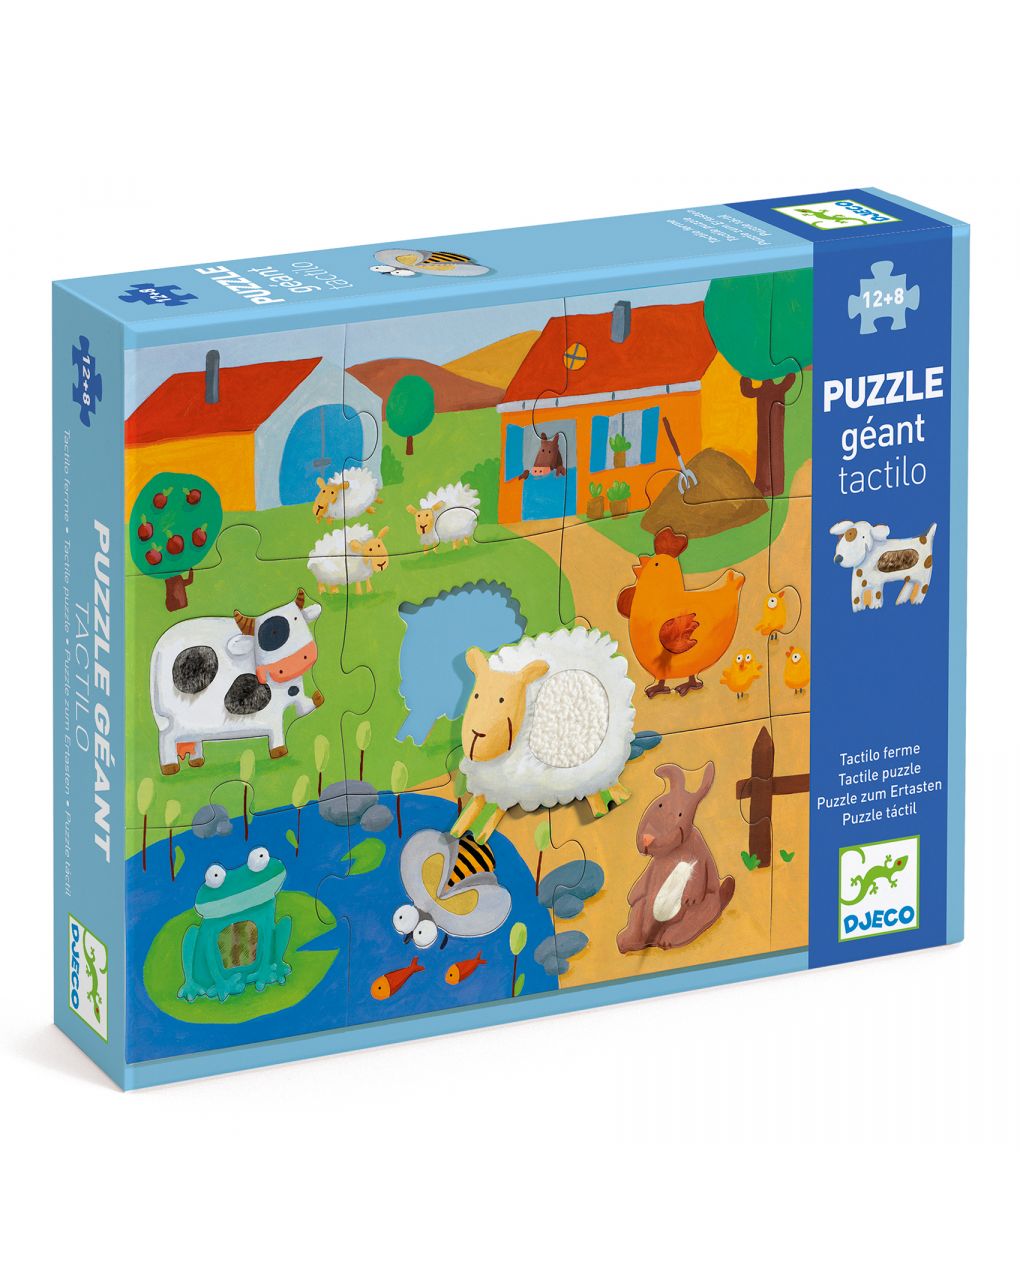 Tactile farm - puzzle gigante da 12 pezzi - djeco - Djeco